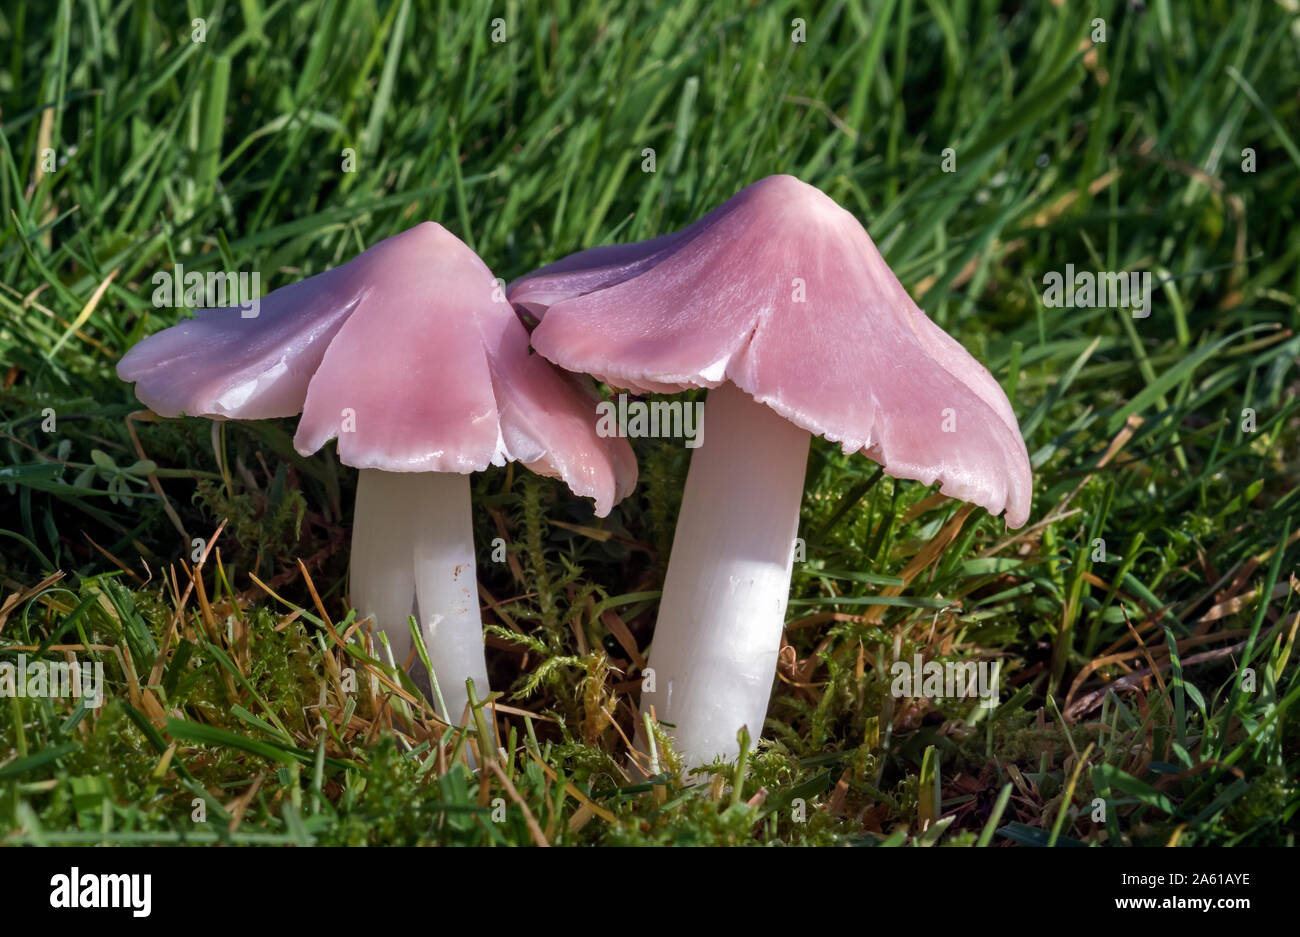 Pink Waxcap (Porpolomopsis calyptriformis or Humidicutis calyptriforms) also known as The Ballerina. Previously known as Hygrocybe calyptriformis Stock Photo